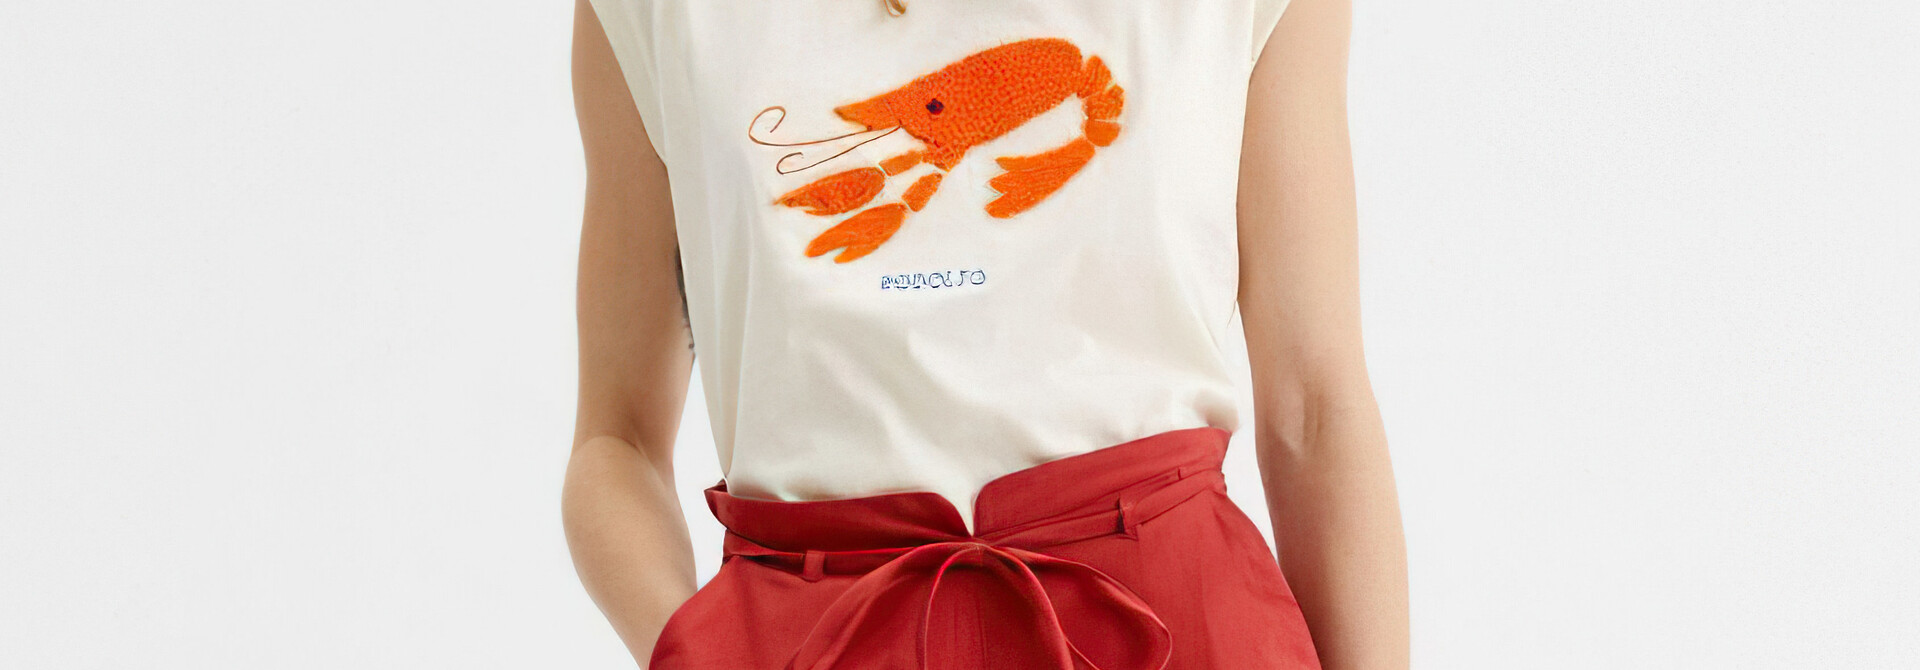 Rodolfo The Lobster Shirt